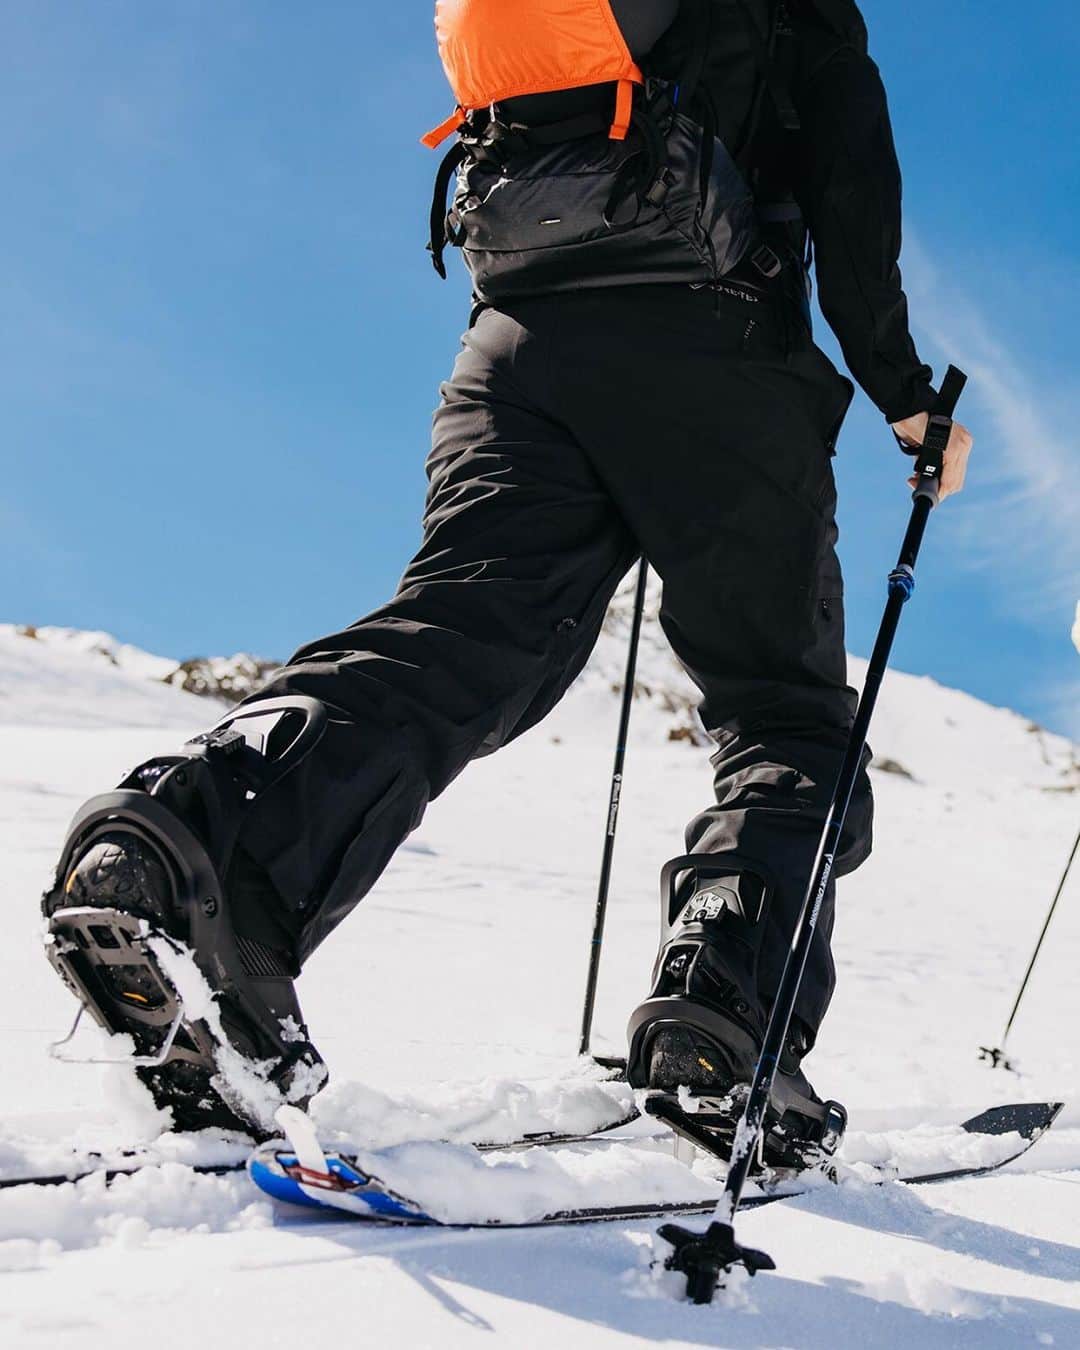 Burton Japanのインスタグラム：「今シーズンのSTEP ON®︎アップデート！ ・待望のスプリットモデル登場（11月20日発売予定） ・より小さいキッズ対応のSTEP ON®︎ Grom登場！ ・バインディング&ブーツのカラバリが豊富に！ さらに詳しい情報はプロフィールのリンクから。 #Burton #Snowboarding」